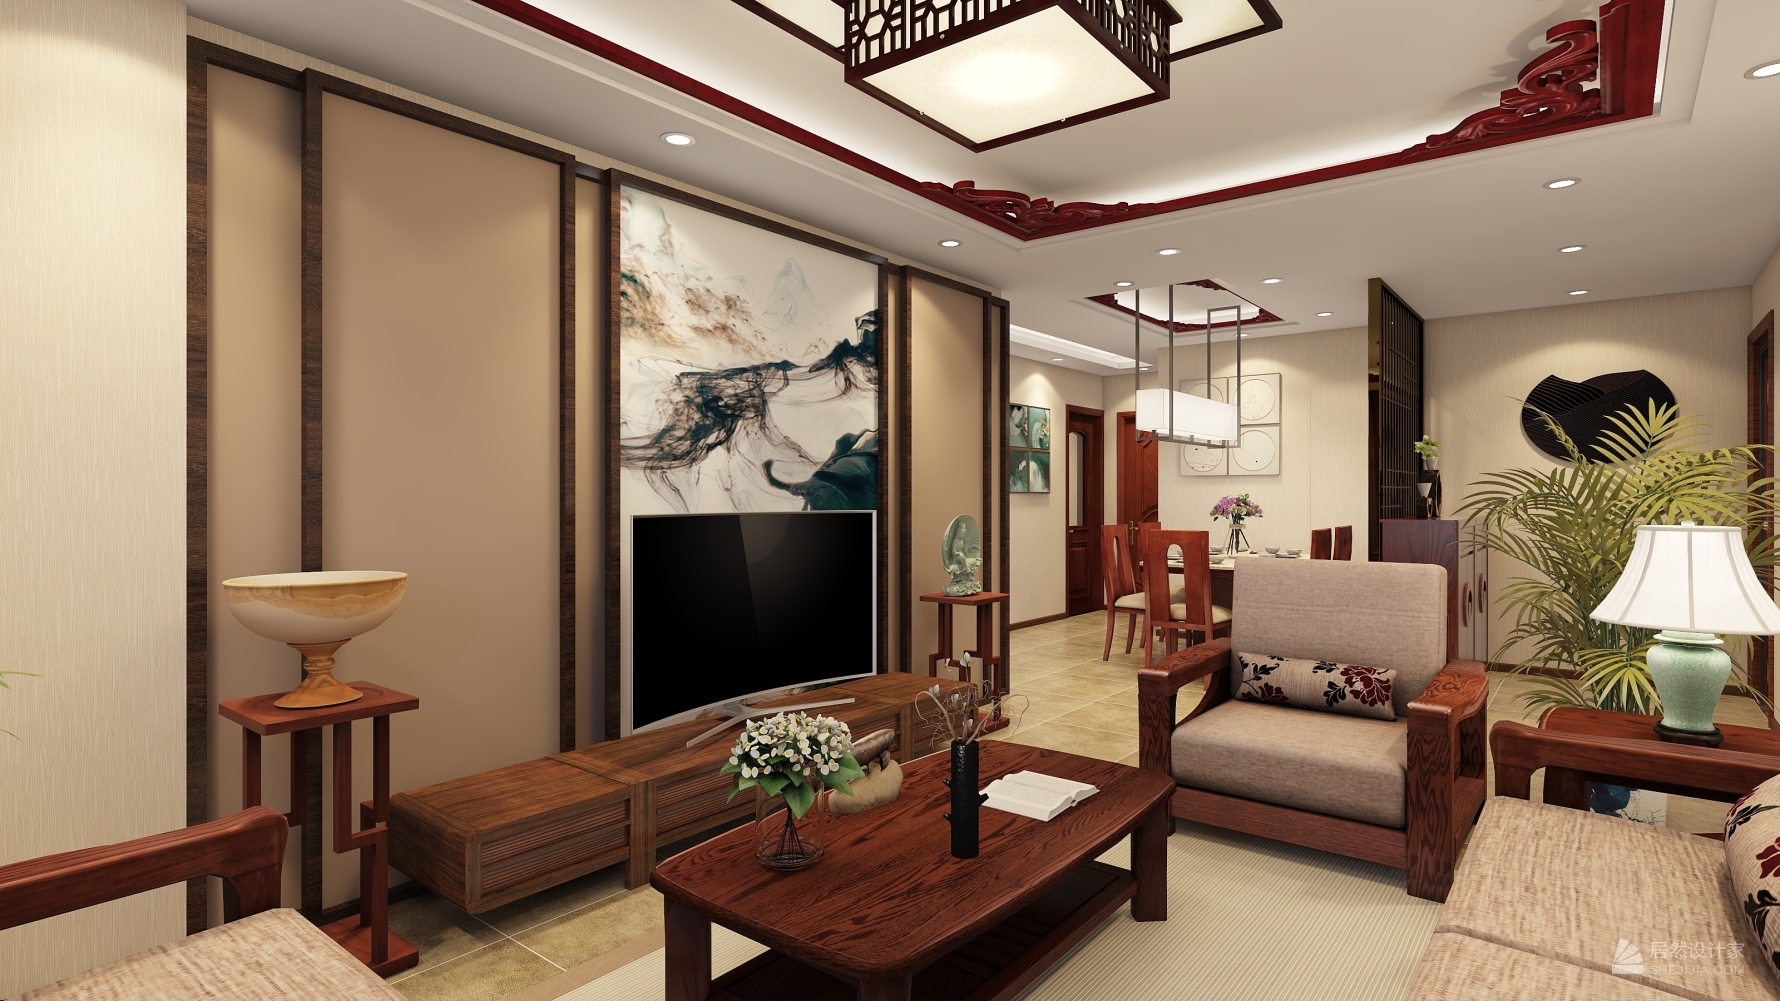 38平米新古典风格两居室客厅装修效果图2014图片_太平洋家居网图库